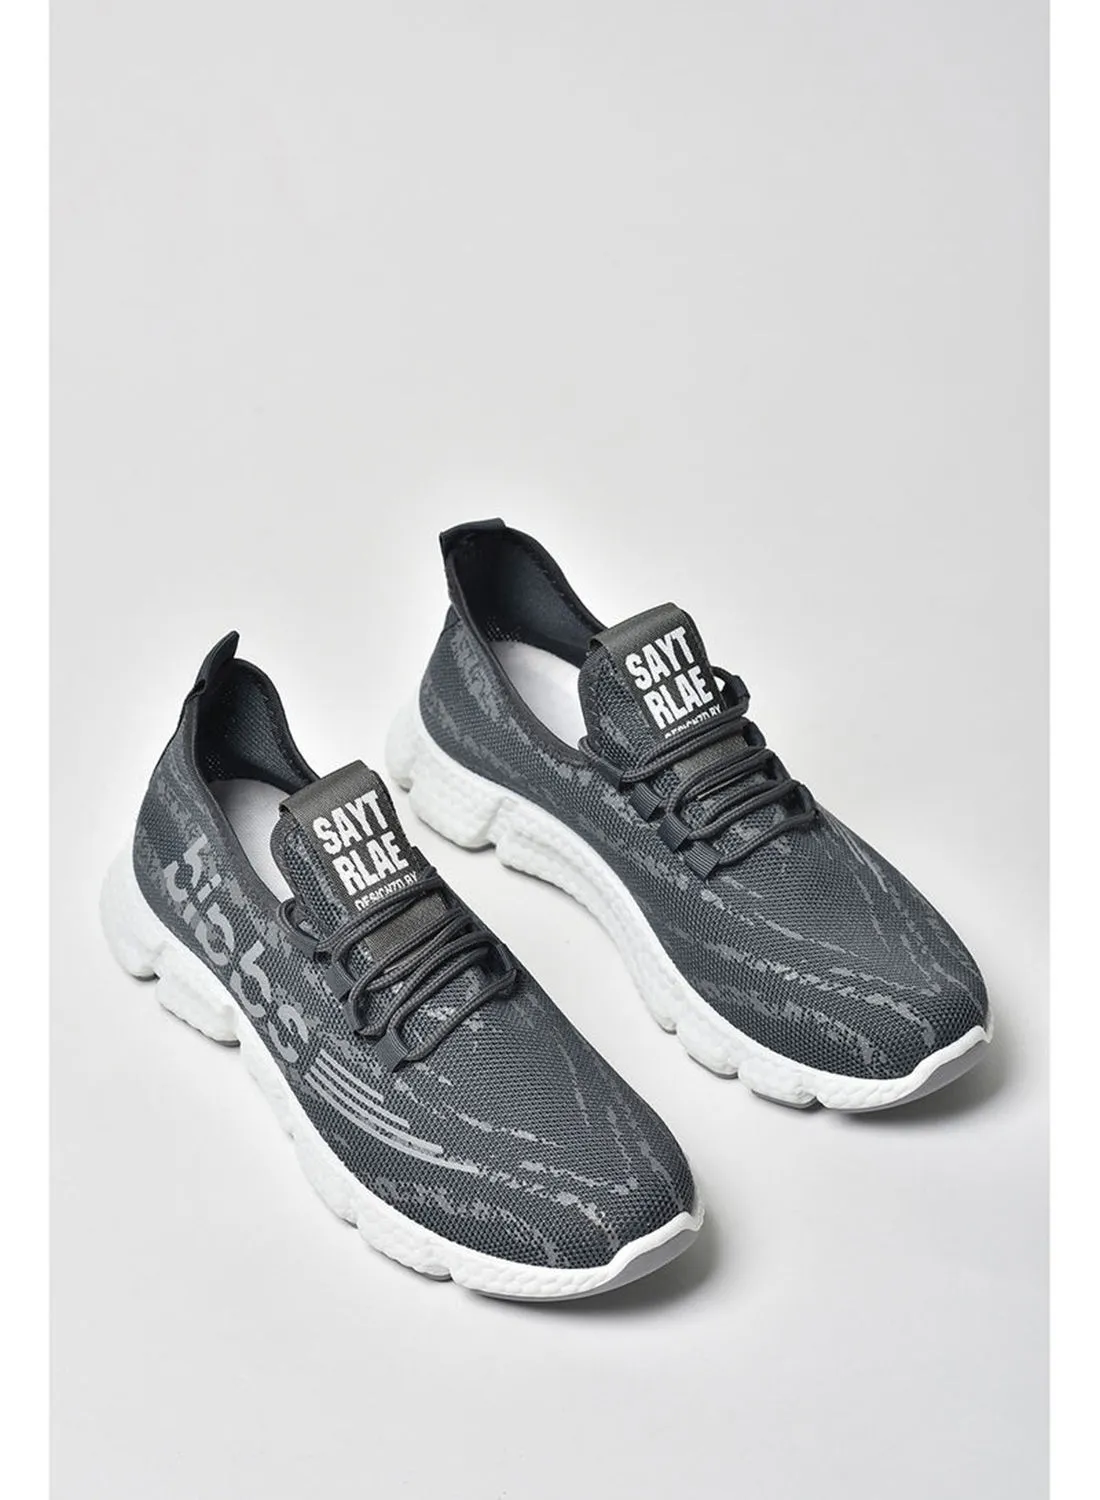 Cobblerz Men's Lace-Up Low Top Sneakers Dark Grey